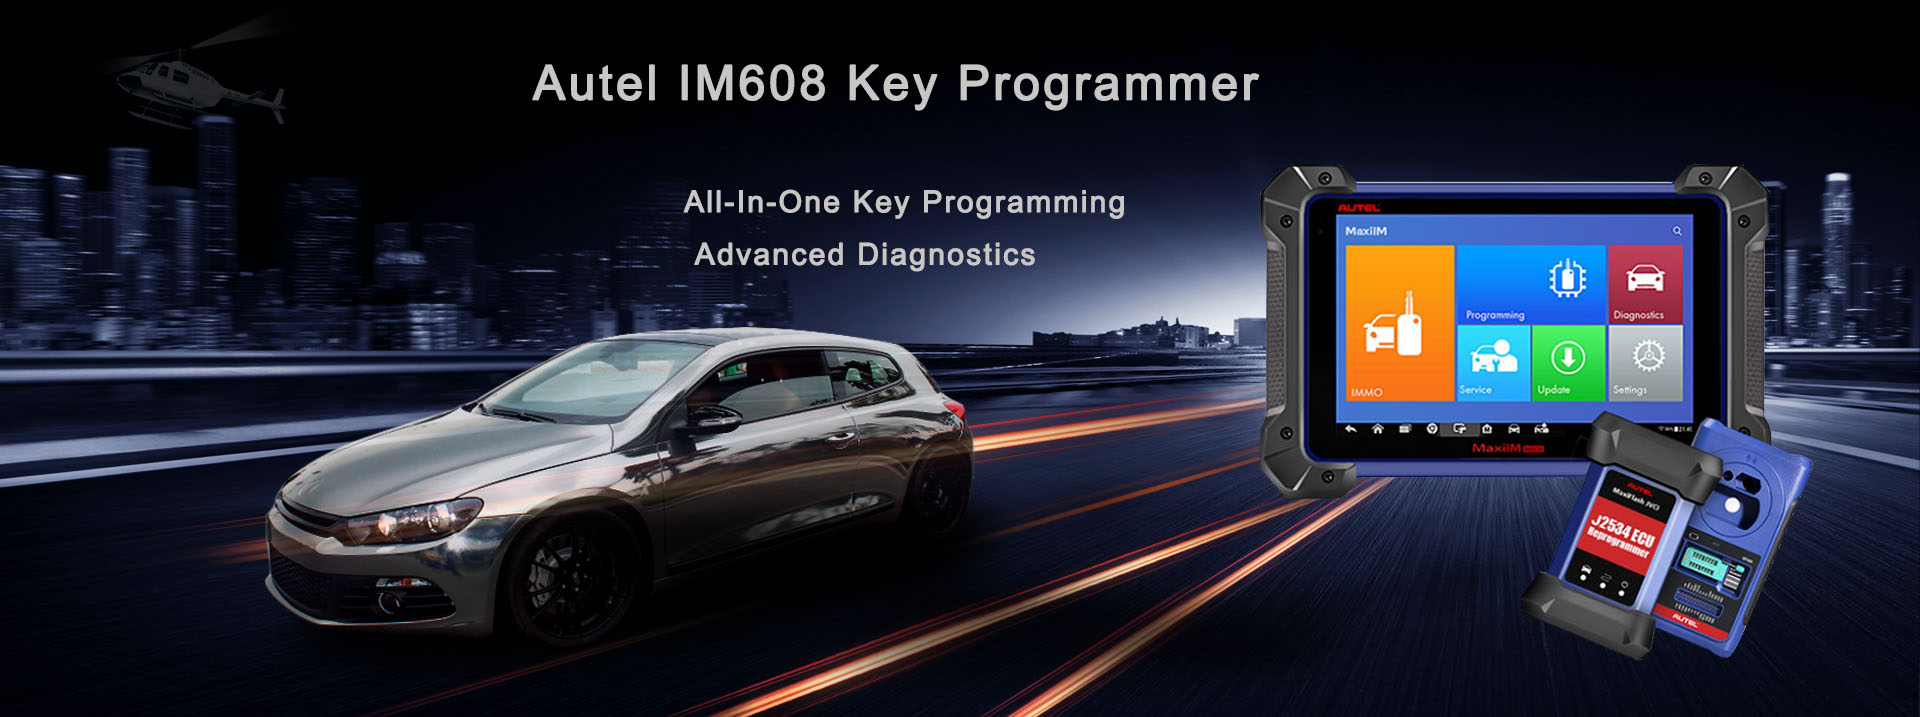 Autel IM608 Key Programmer